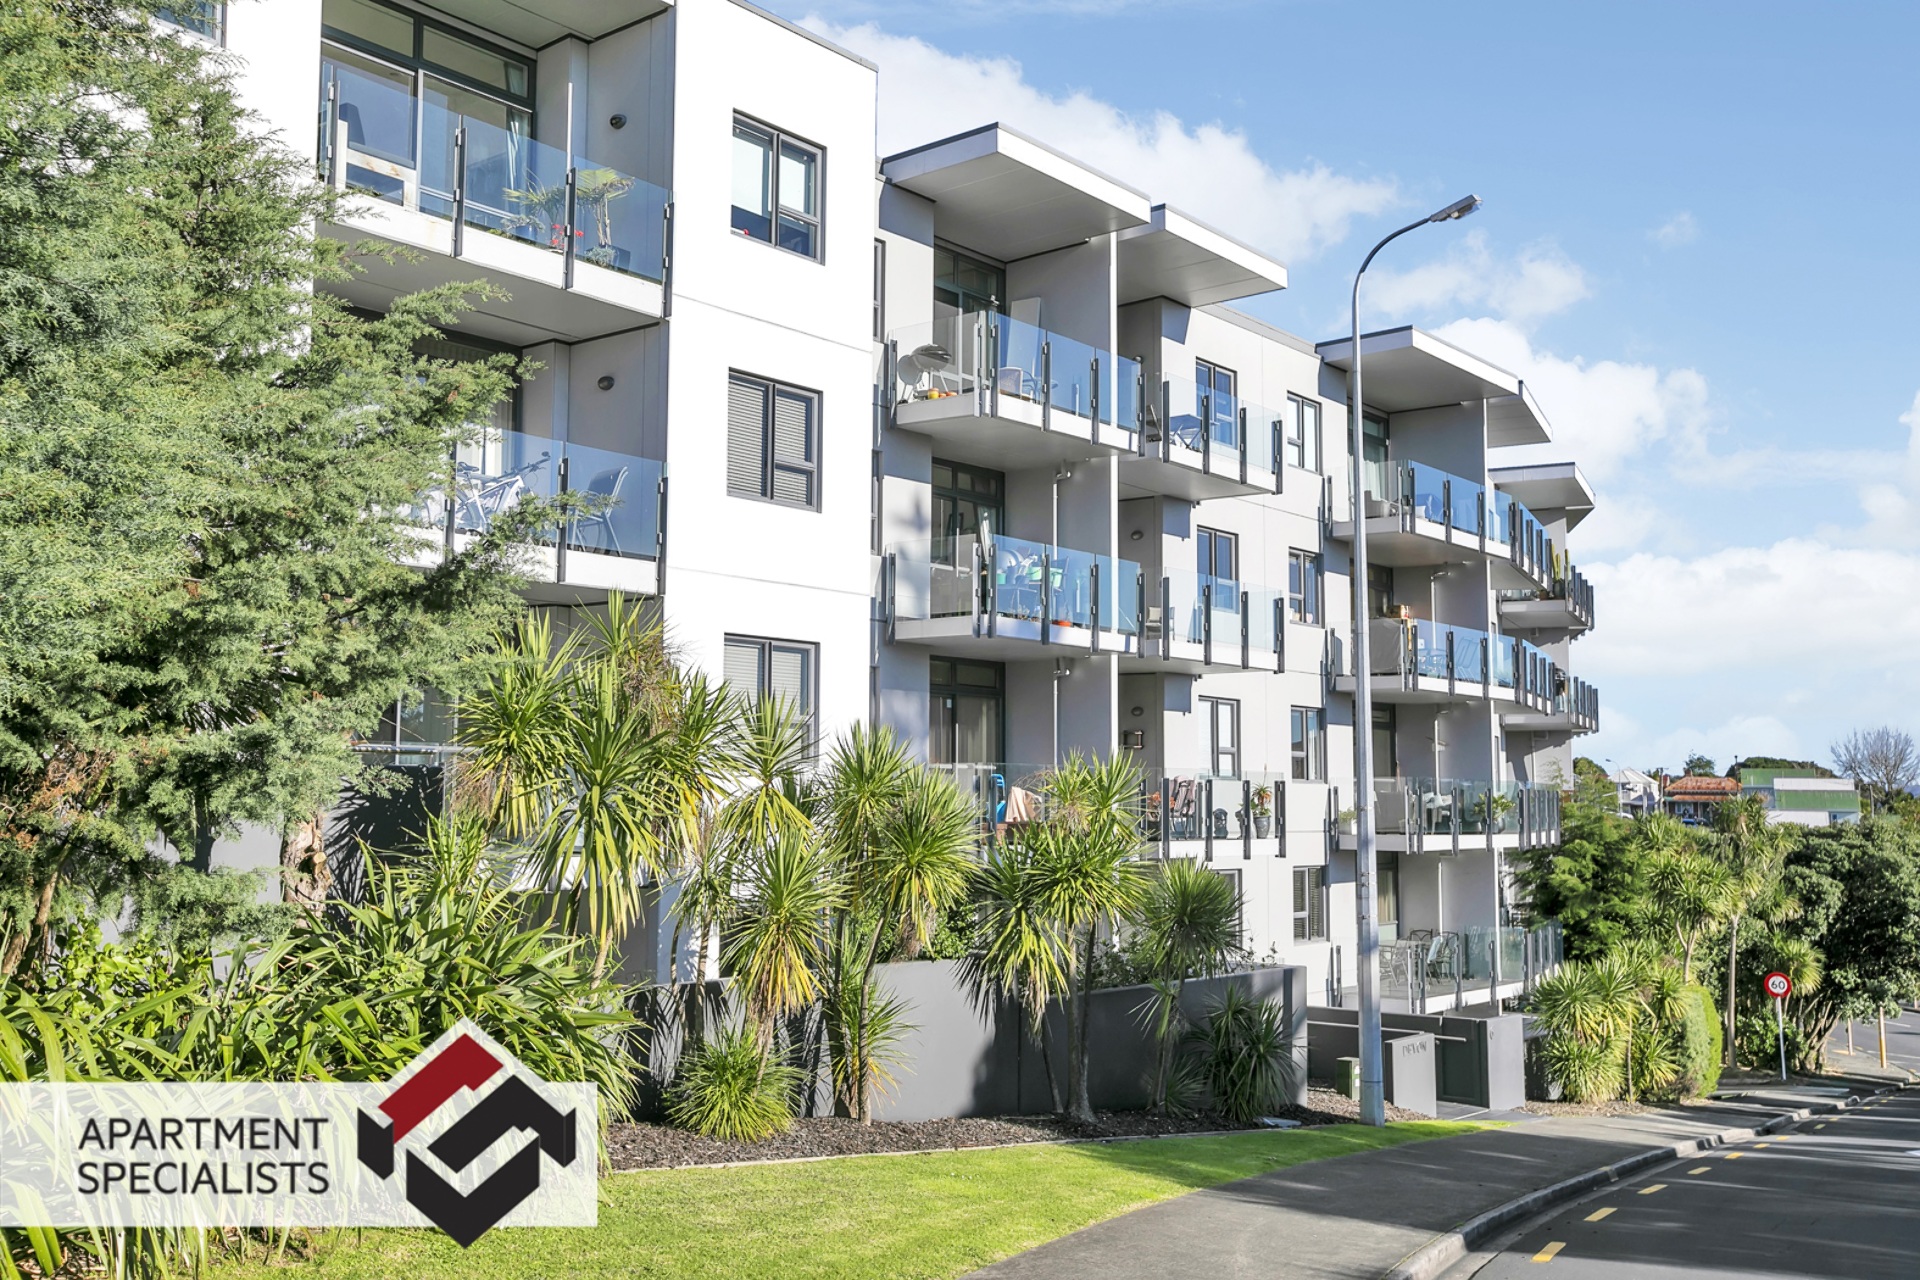 15 | 6 Piwakawaka Street, Eden Terrace | Apartment Specialists